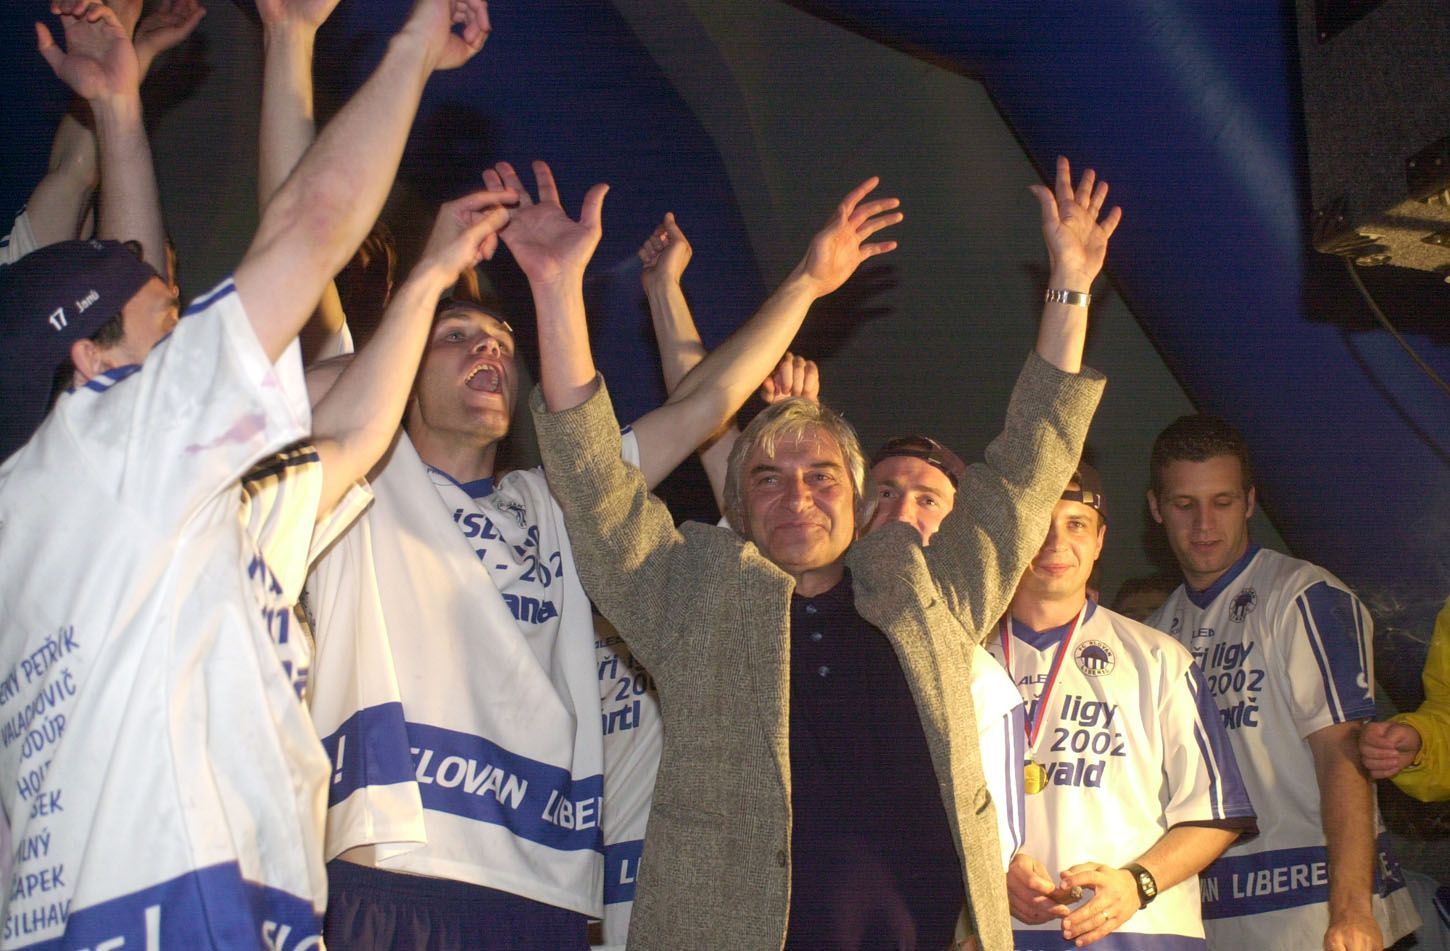 Liberecké oslavy titulu v roce 2002: Johana, Škorpl